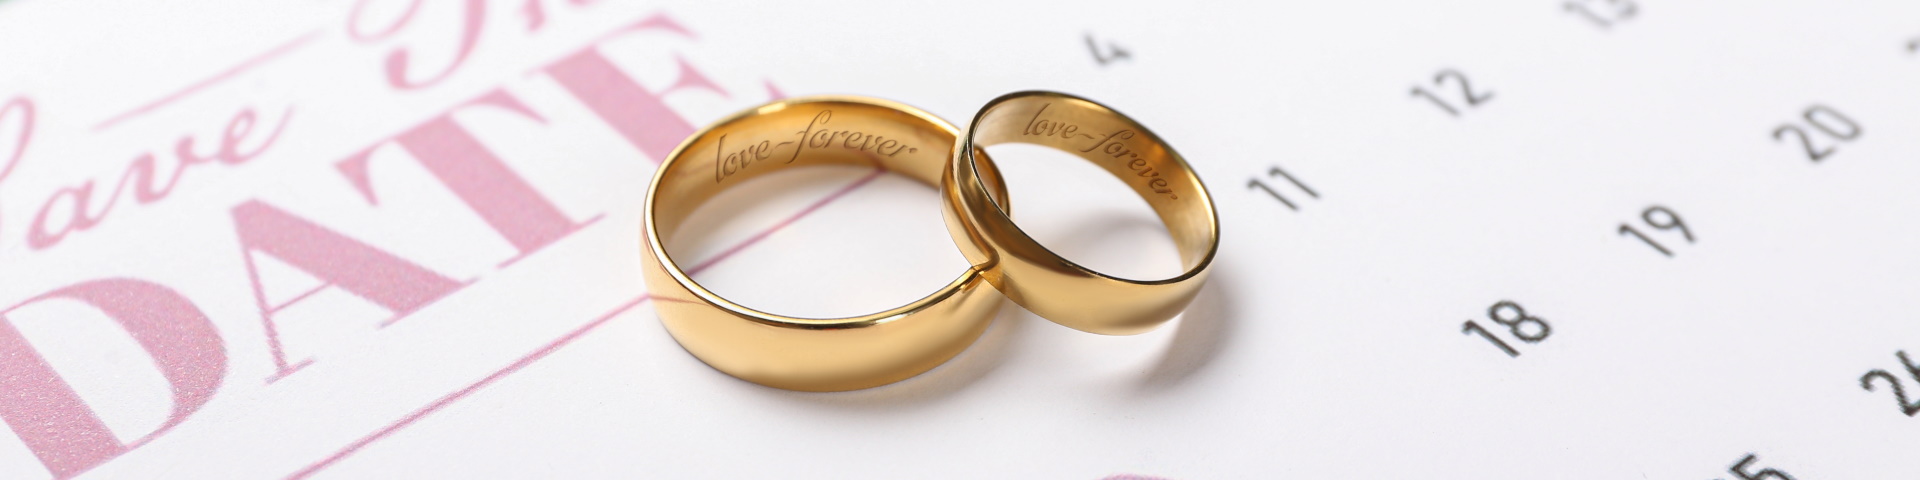 Zwei goldene Ringe liegen auf einer Save the date Karte